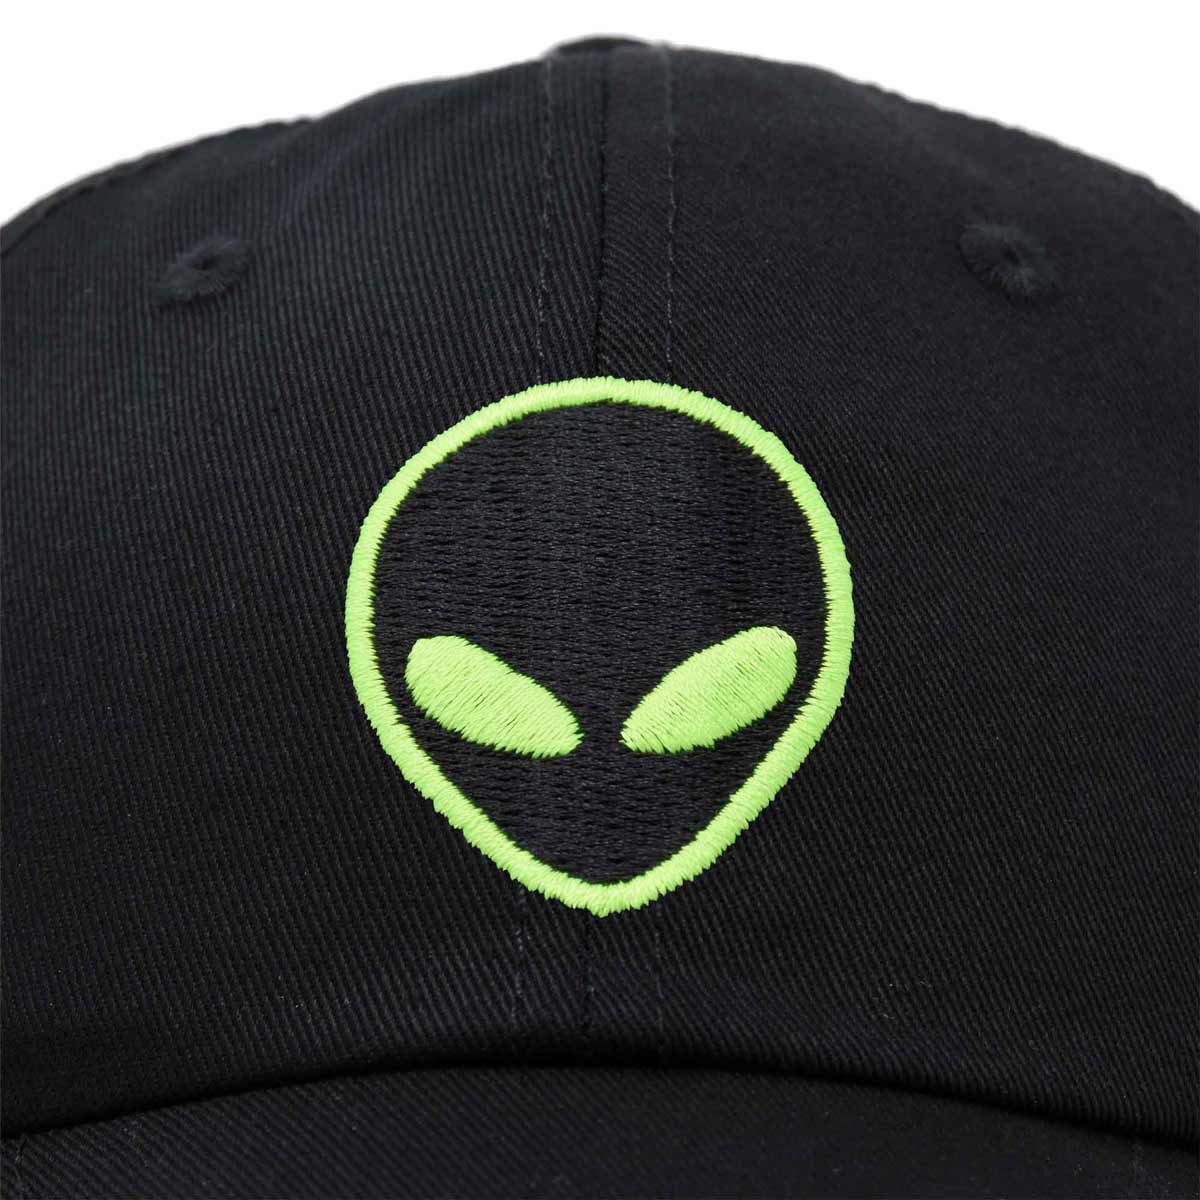 Dalix Alien Hat